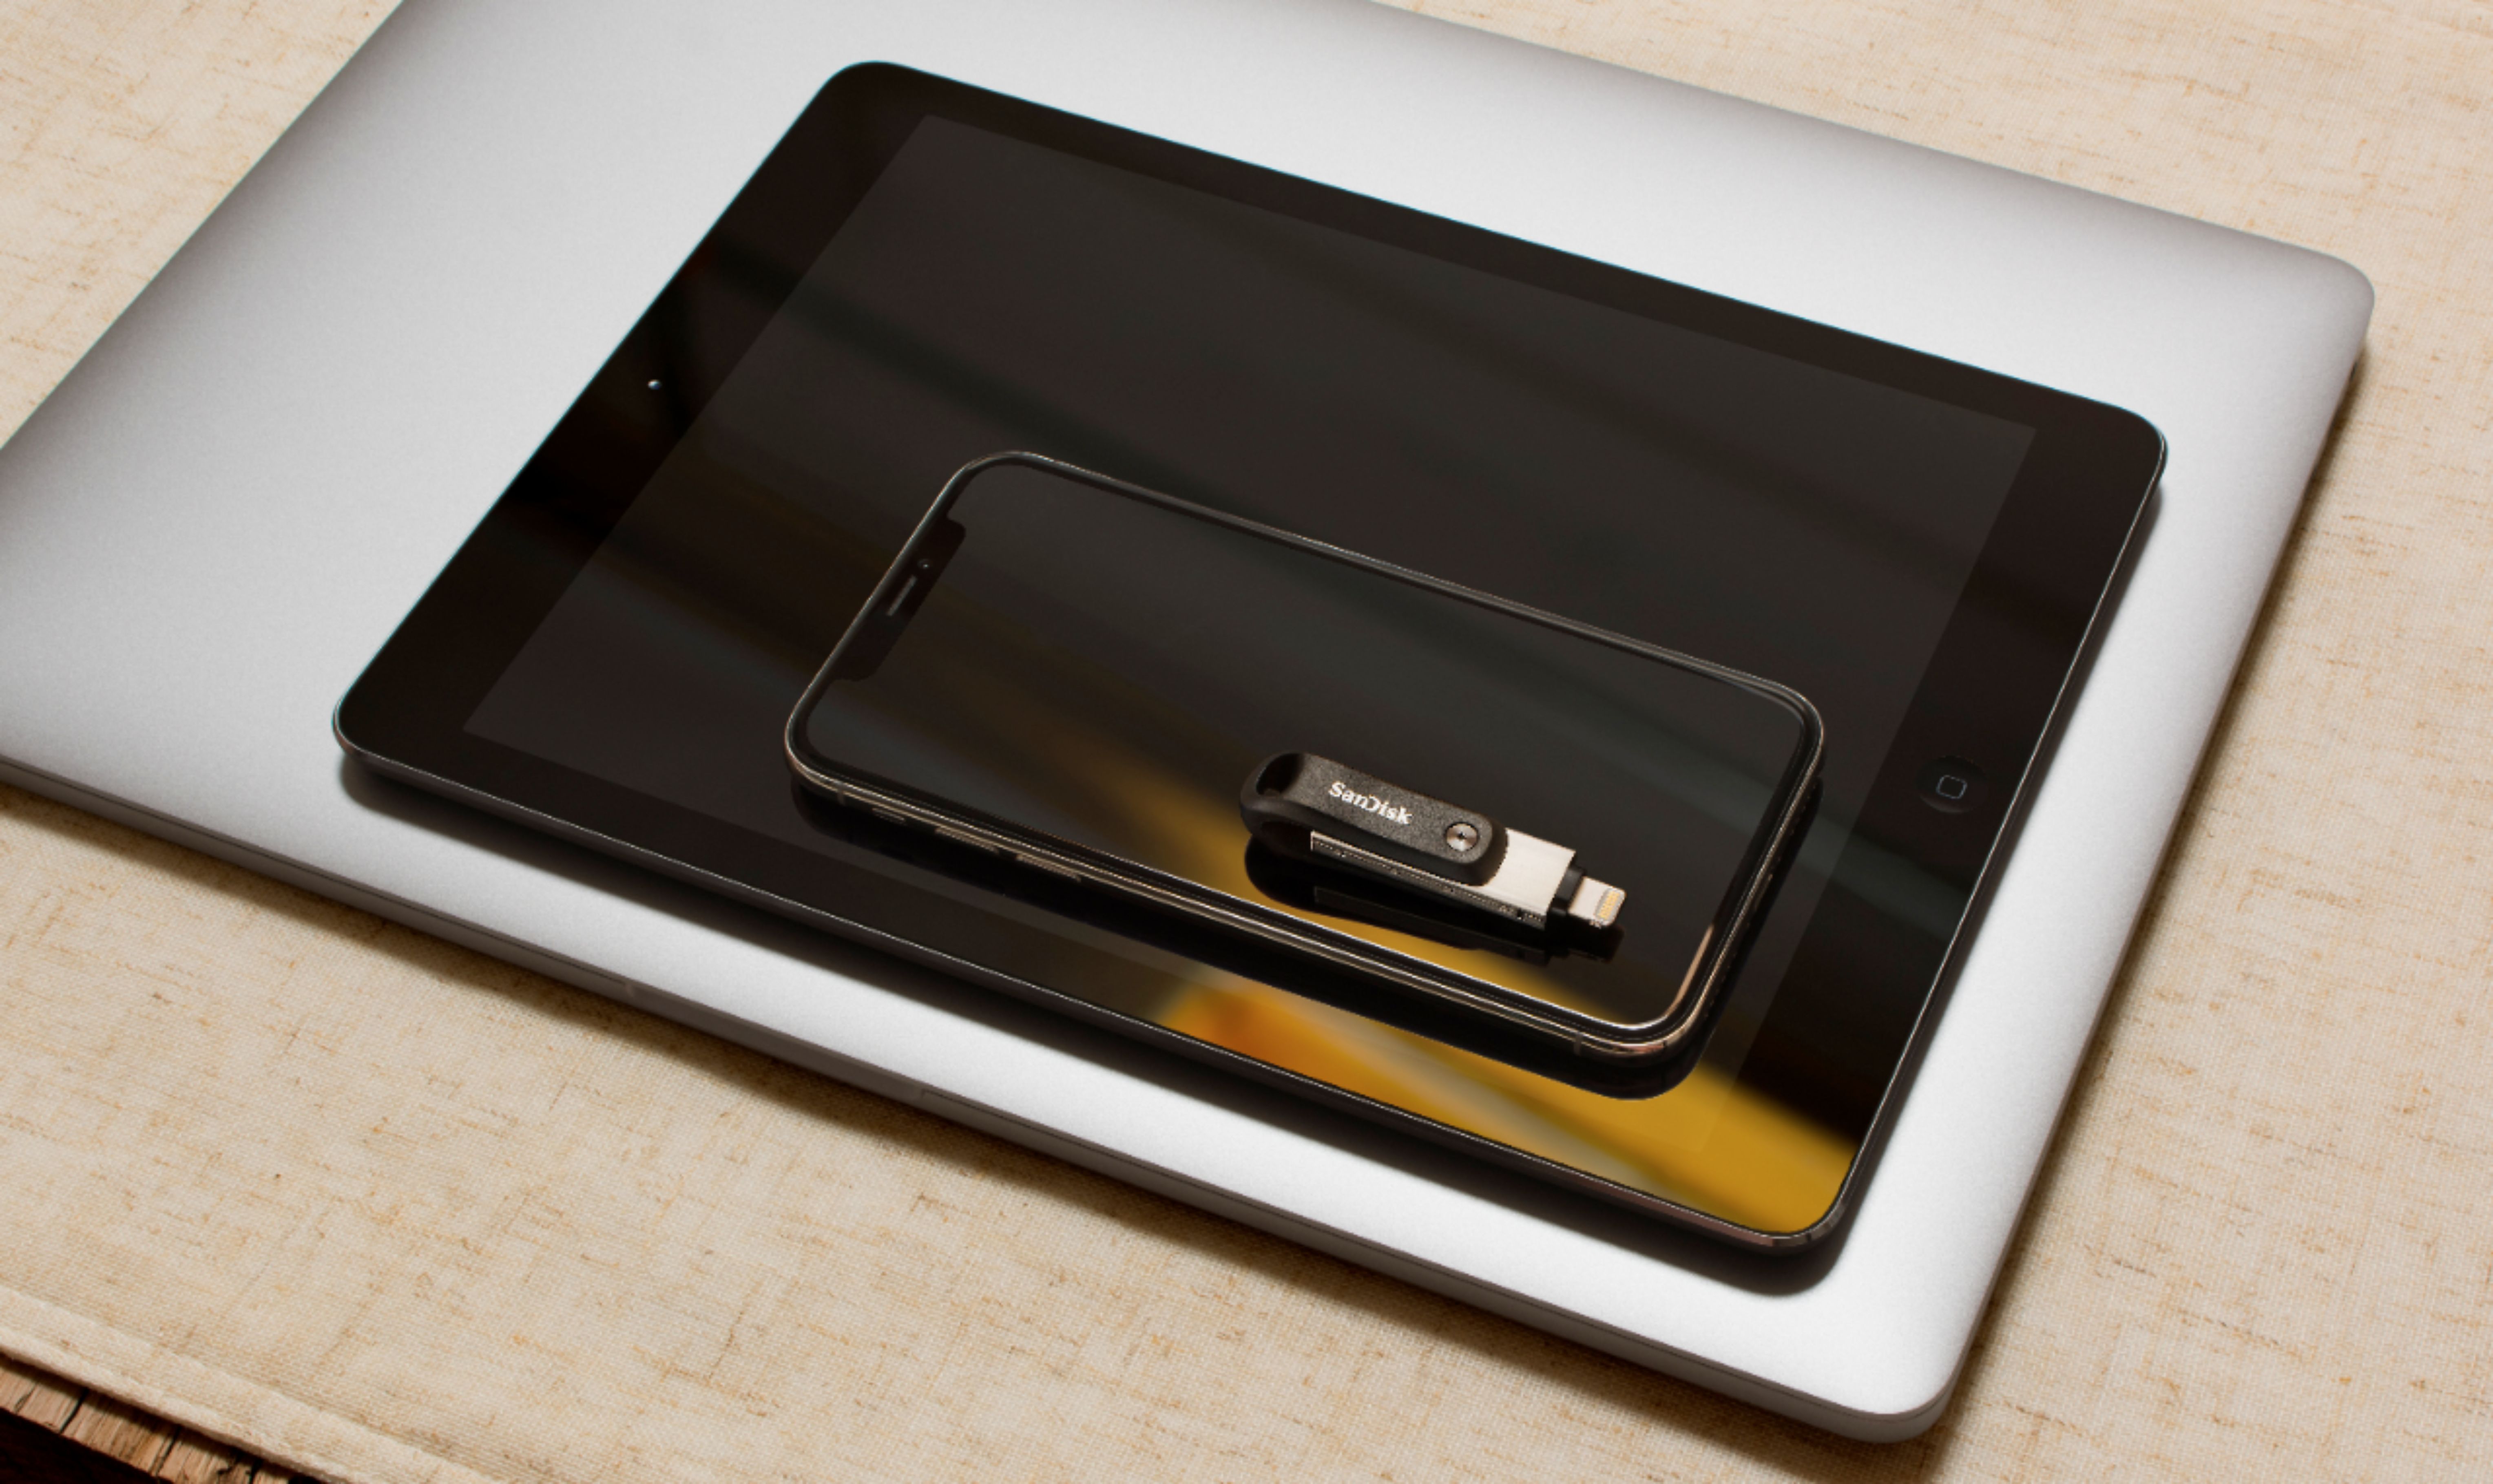 Clé USB Sandisk 128 Go iXpand Flash Drive Flip avec Port Apple